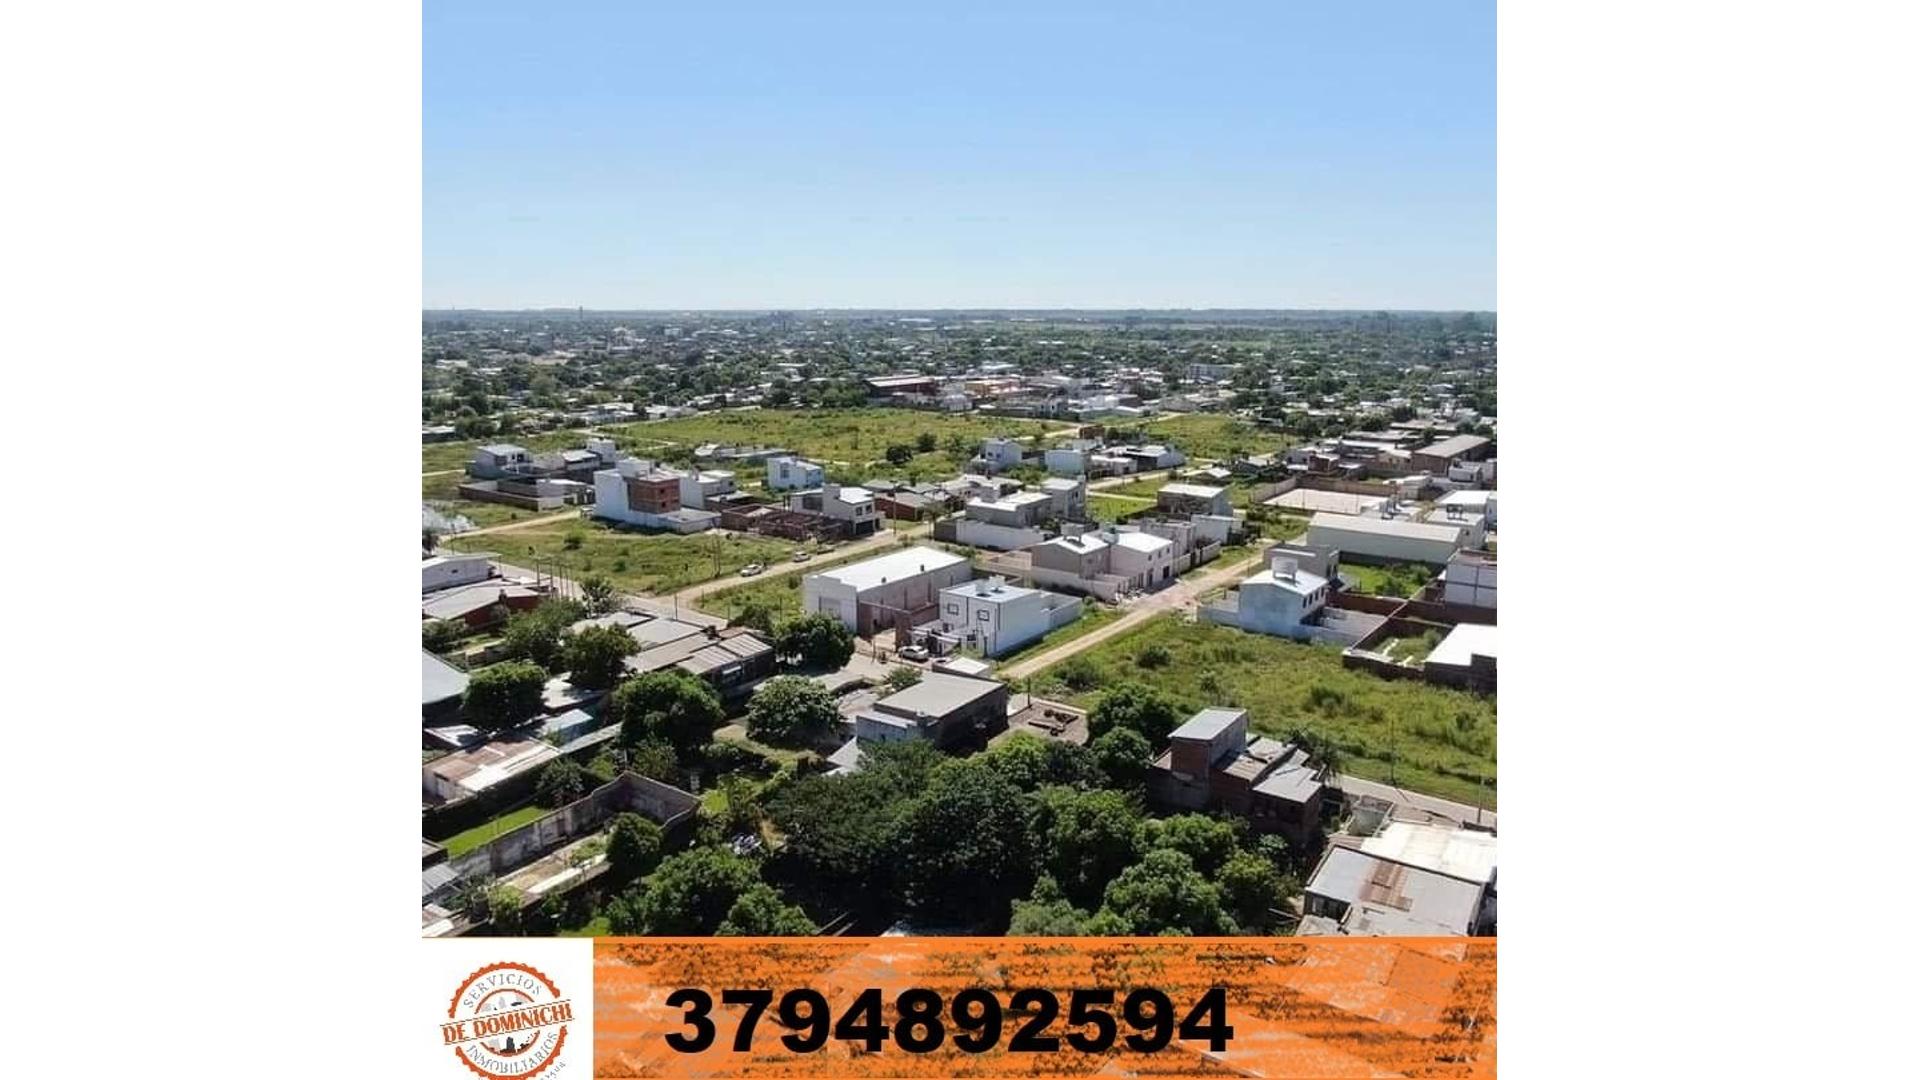 #1520959 | Venta | Lote | Corrientes (De Dominichi Servicios Inmobiliarios)